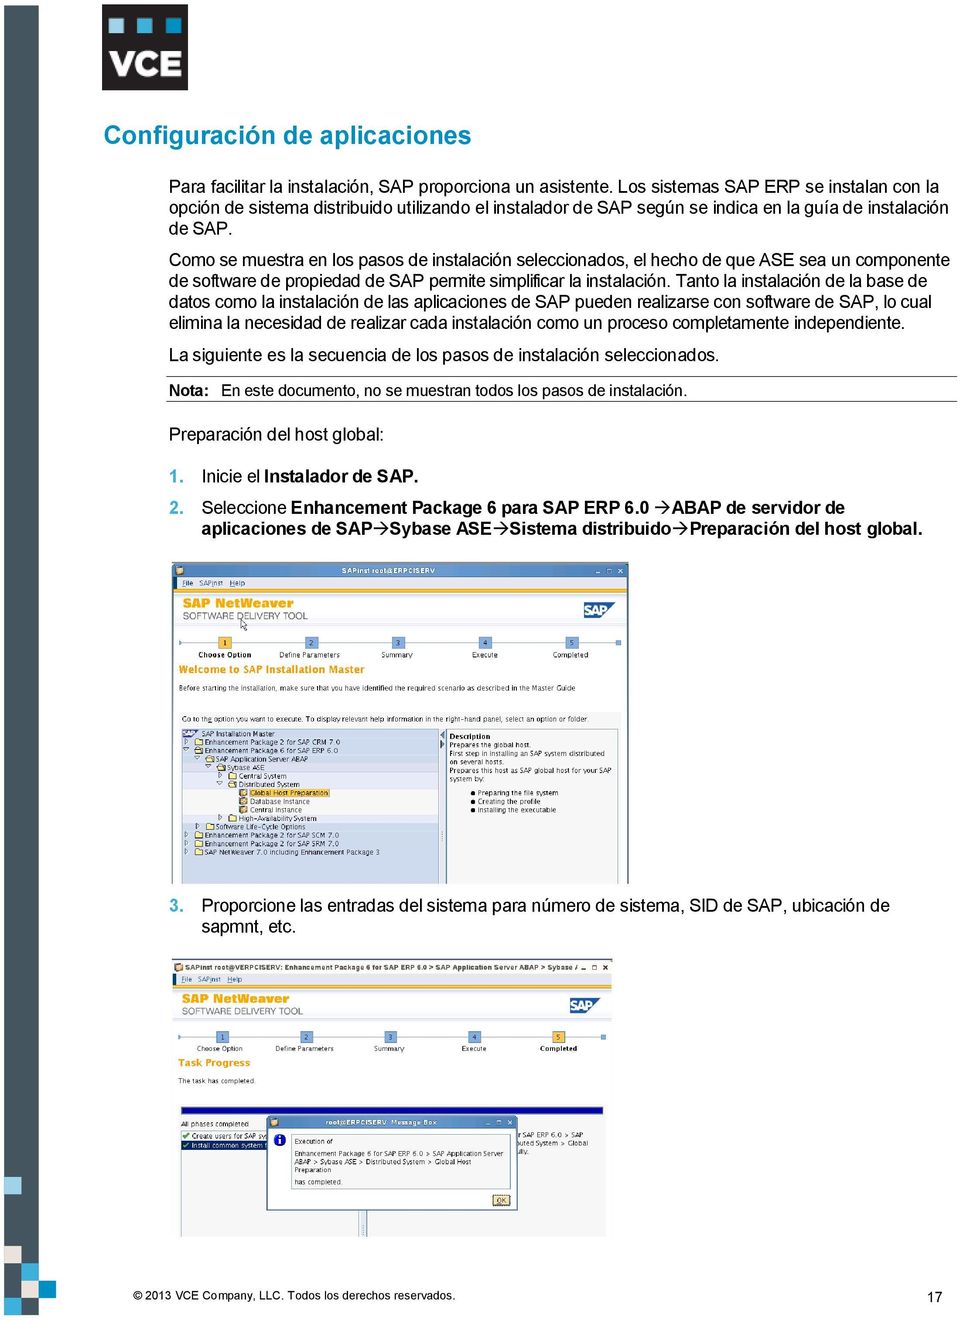 omo se muestra en los pasos de instalación seleccionados, el hecho de que ASE sea un componente de software de propiedad de SAP permite simplificar la instalación.